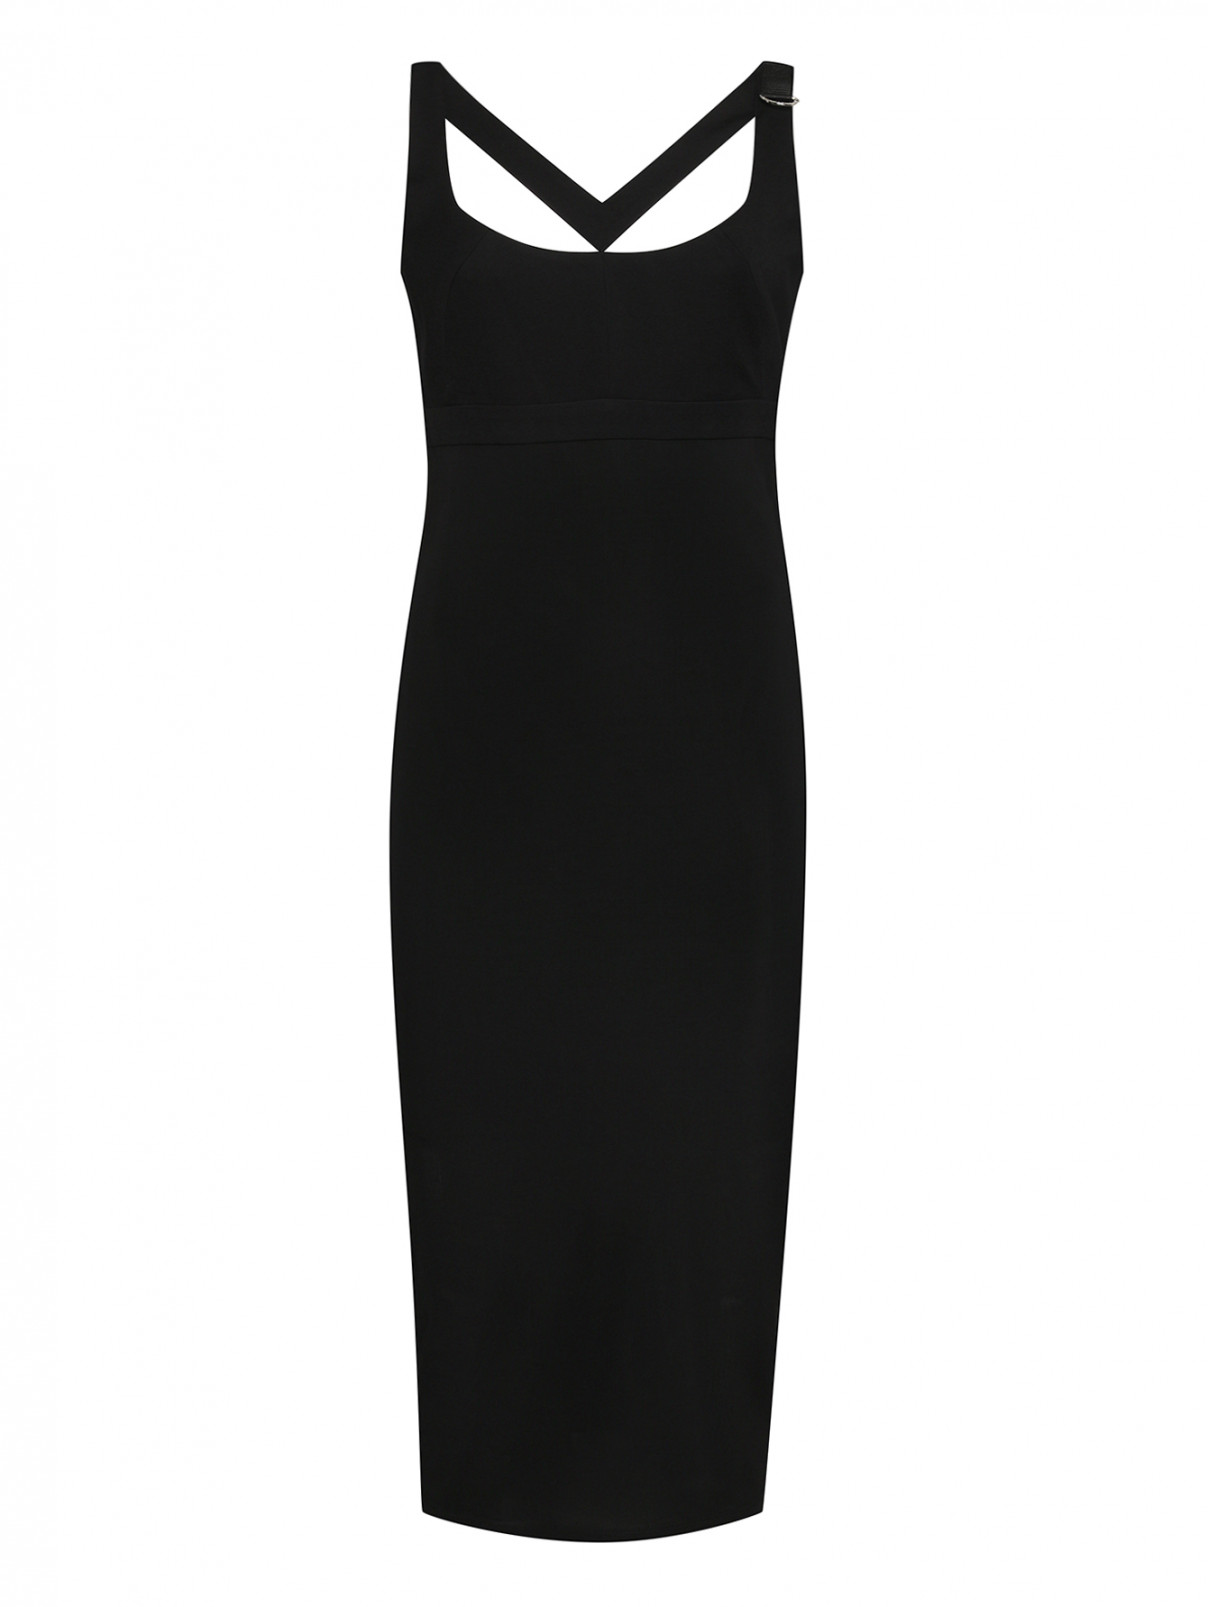 Трикотажное платье с вырезами Versace Jeans  –  Общий вид  – Цвет:  Черный